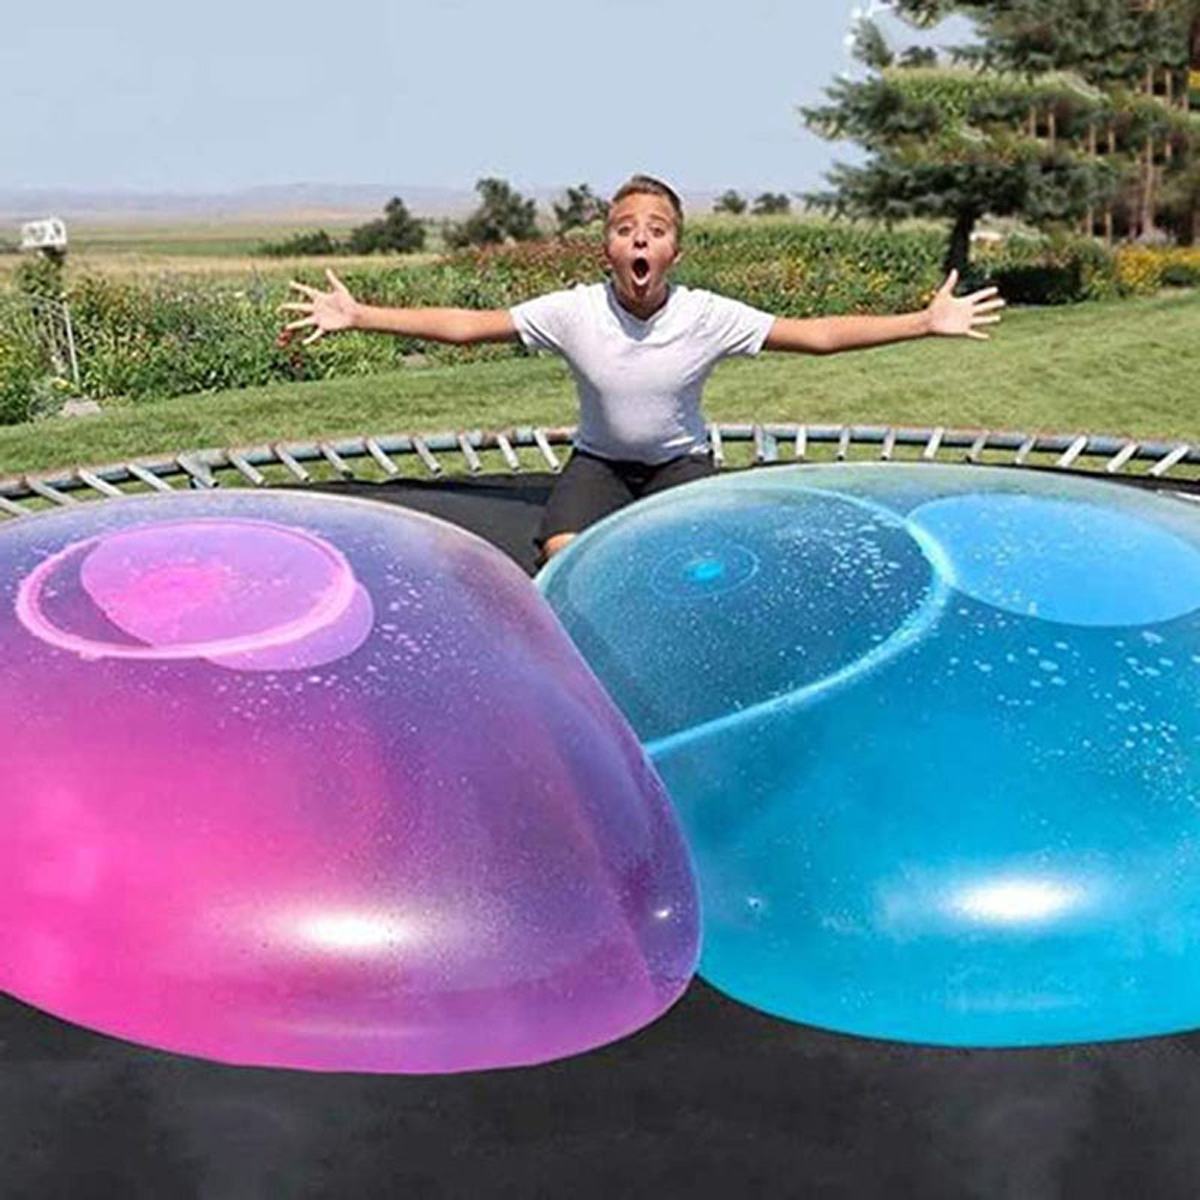 Налить воду в шар. Super Wubble Bubble Ball. Гигантский блистерный мяч Wubble Bubble Ball. Надувной шар для воды. Шар надувной большой для воды.